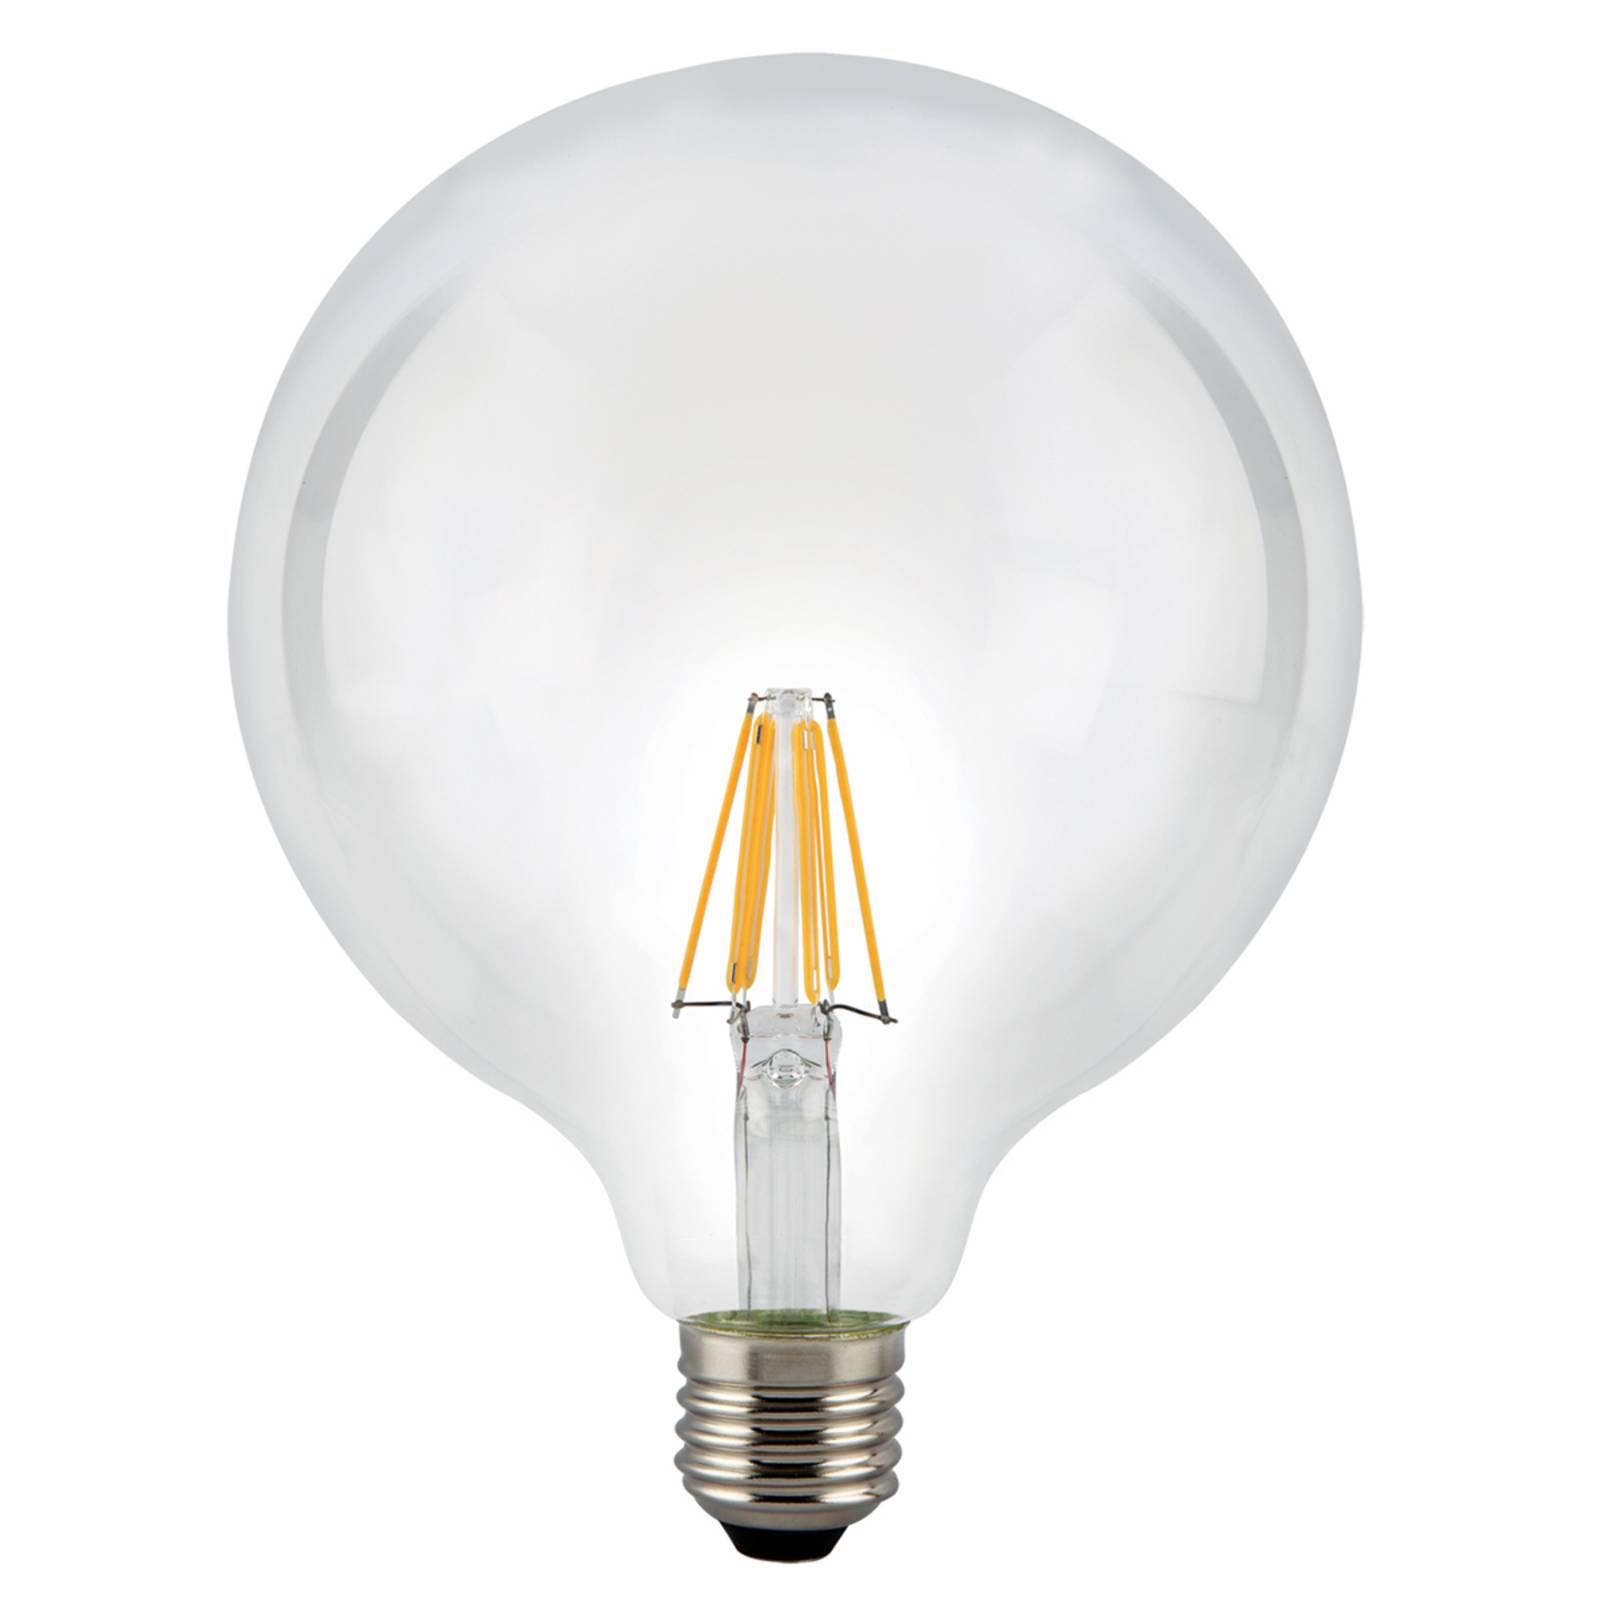 LED-Globelampe E27 8W 827 klar von Sylvania